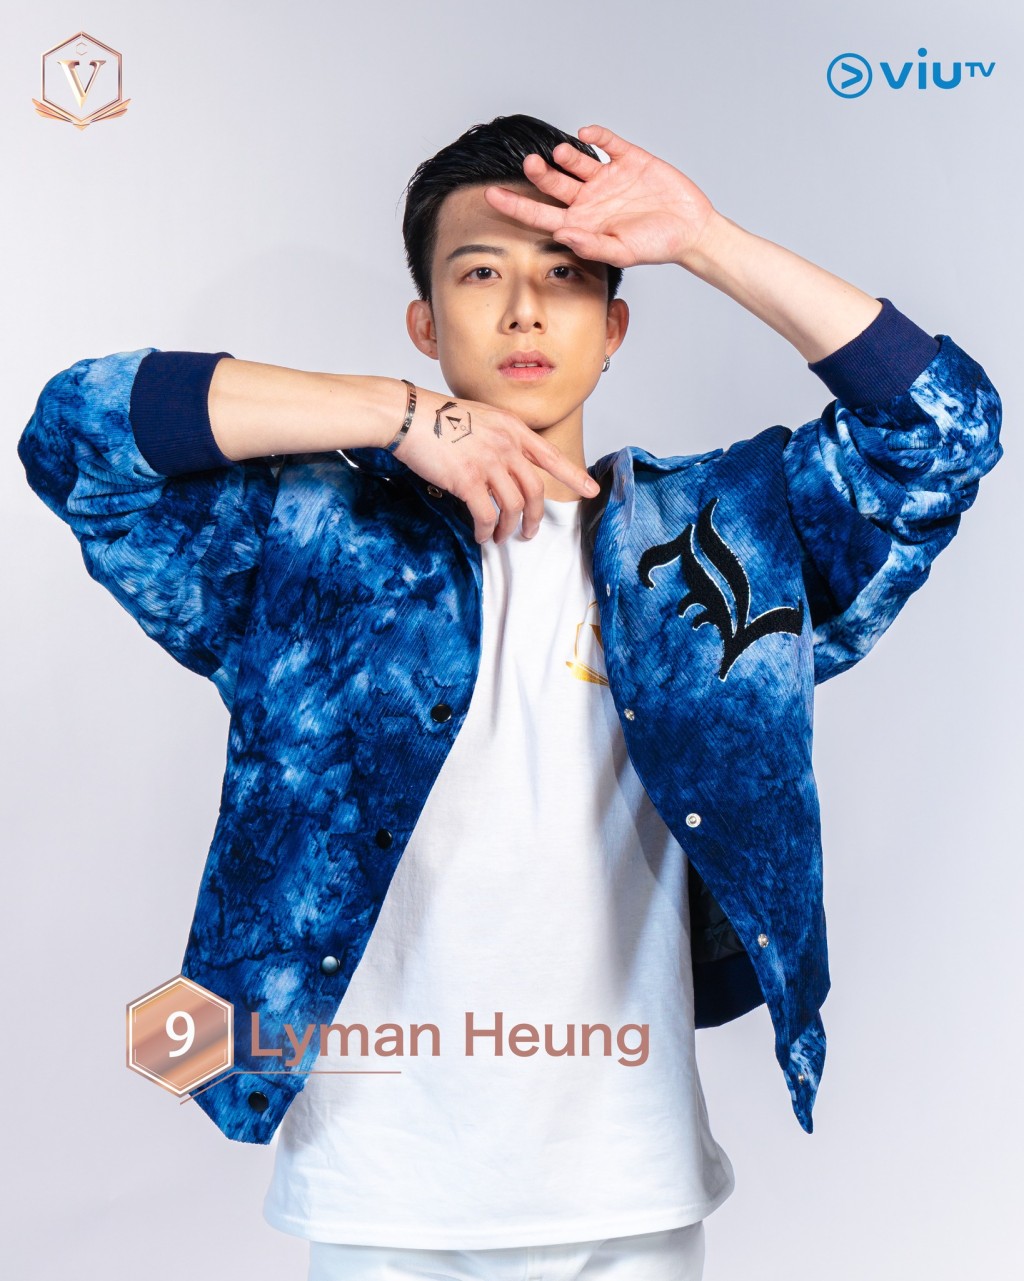 胤宅（Lyman Heung） 年龄： 32 职业：标准舞、拉丁舞 导师 擅长：跳舞、戏剧 IG：lyman.heung #温哥华参赛者